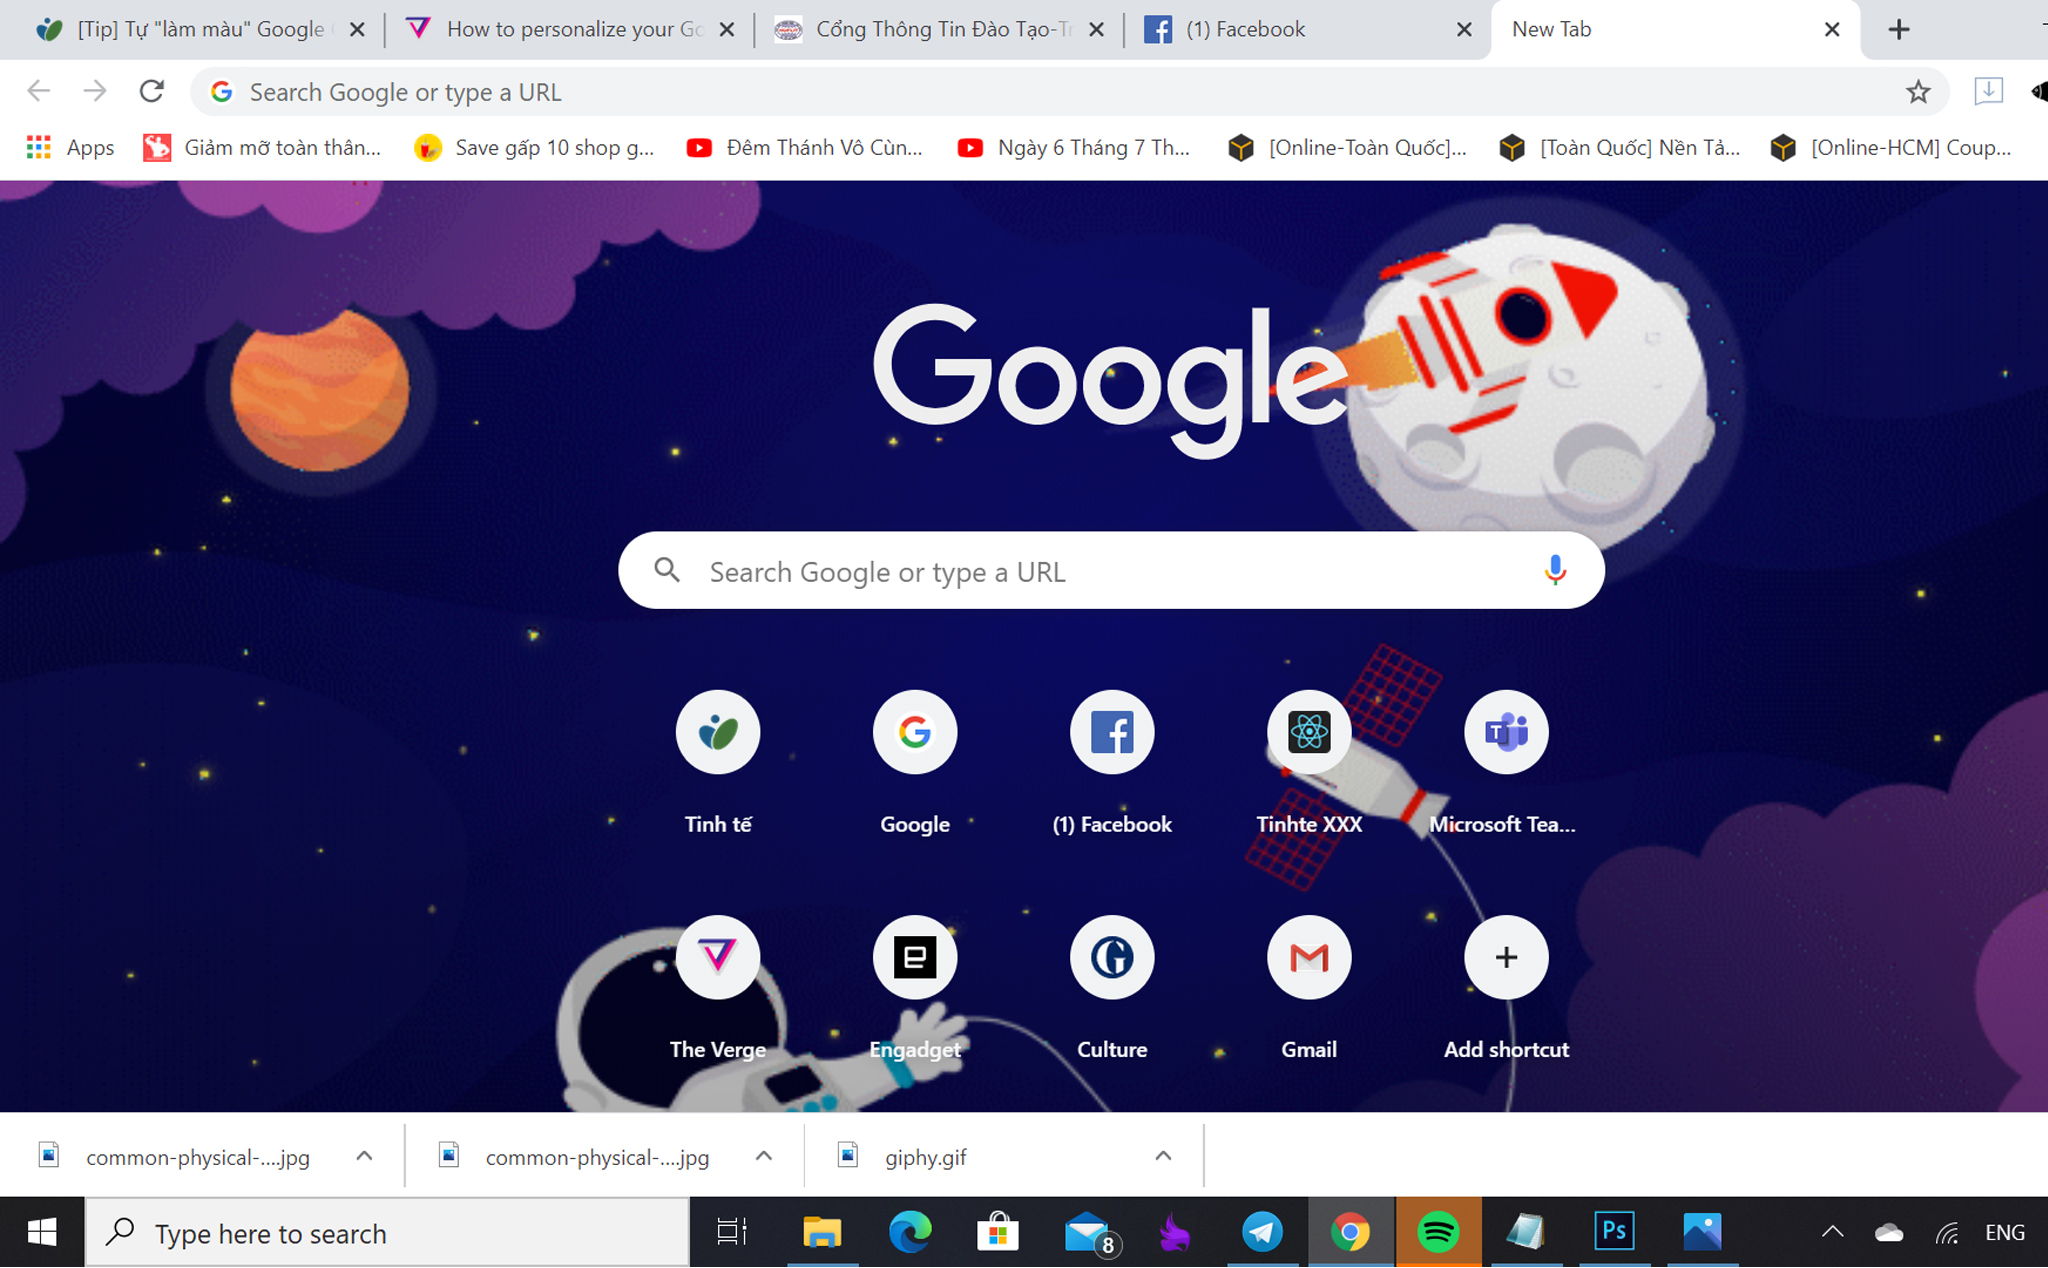 Tạo sự khác biệt với trình duyệt Google Chrome của bạn bằng cách làm màu màn hình bằng gif. Xem hình ảnh liên quan đến chủ đề này để hiểu cách thức thực hiện và các bước để có thể làm màu trình duyệt Chrome của bạn độc đáo và đẹp mắt.